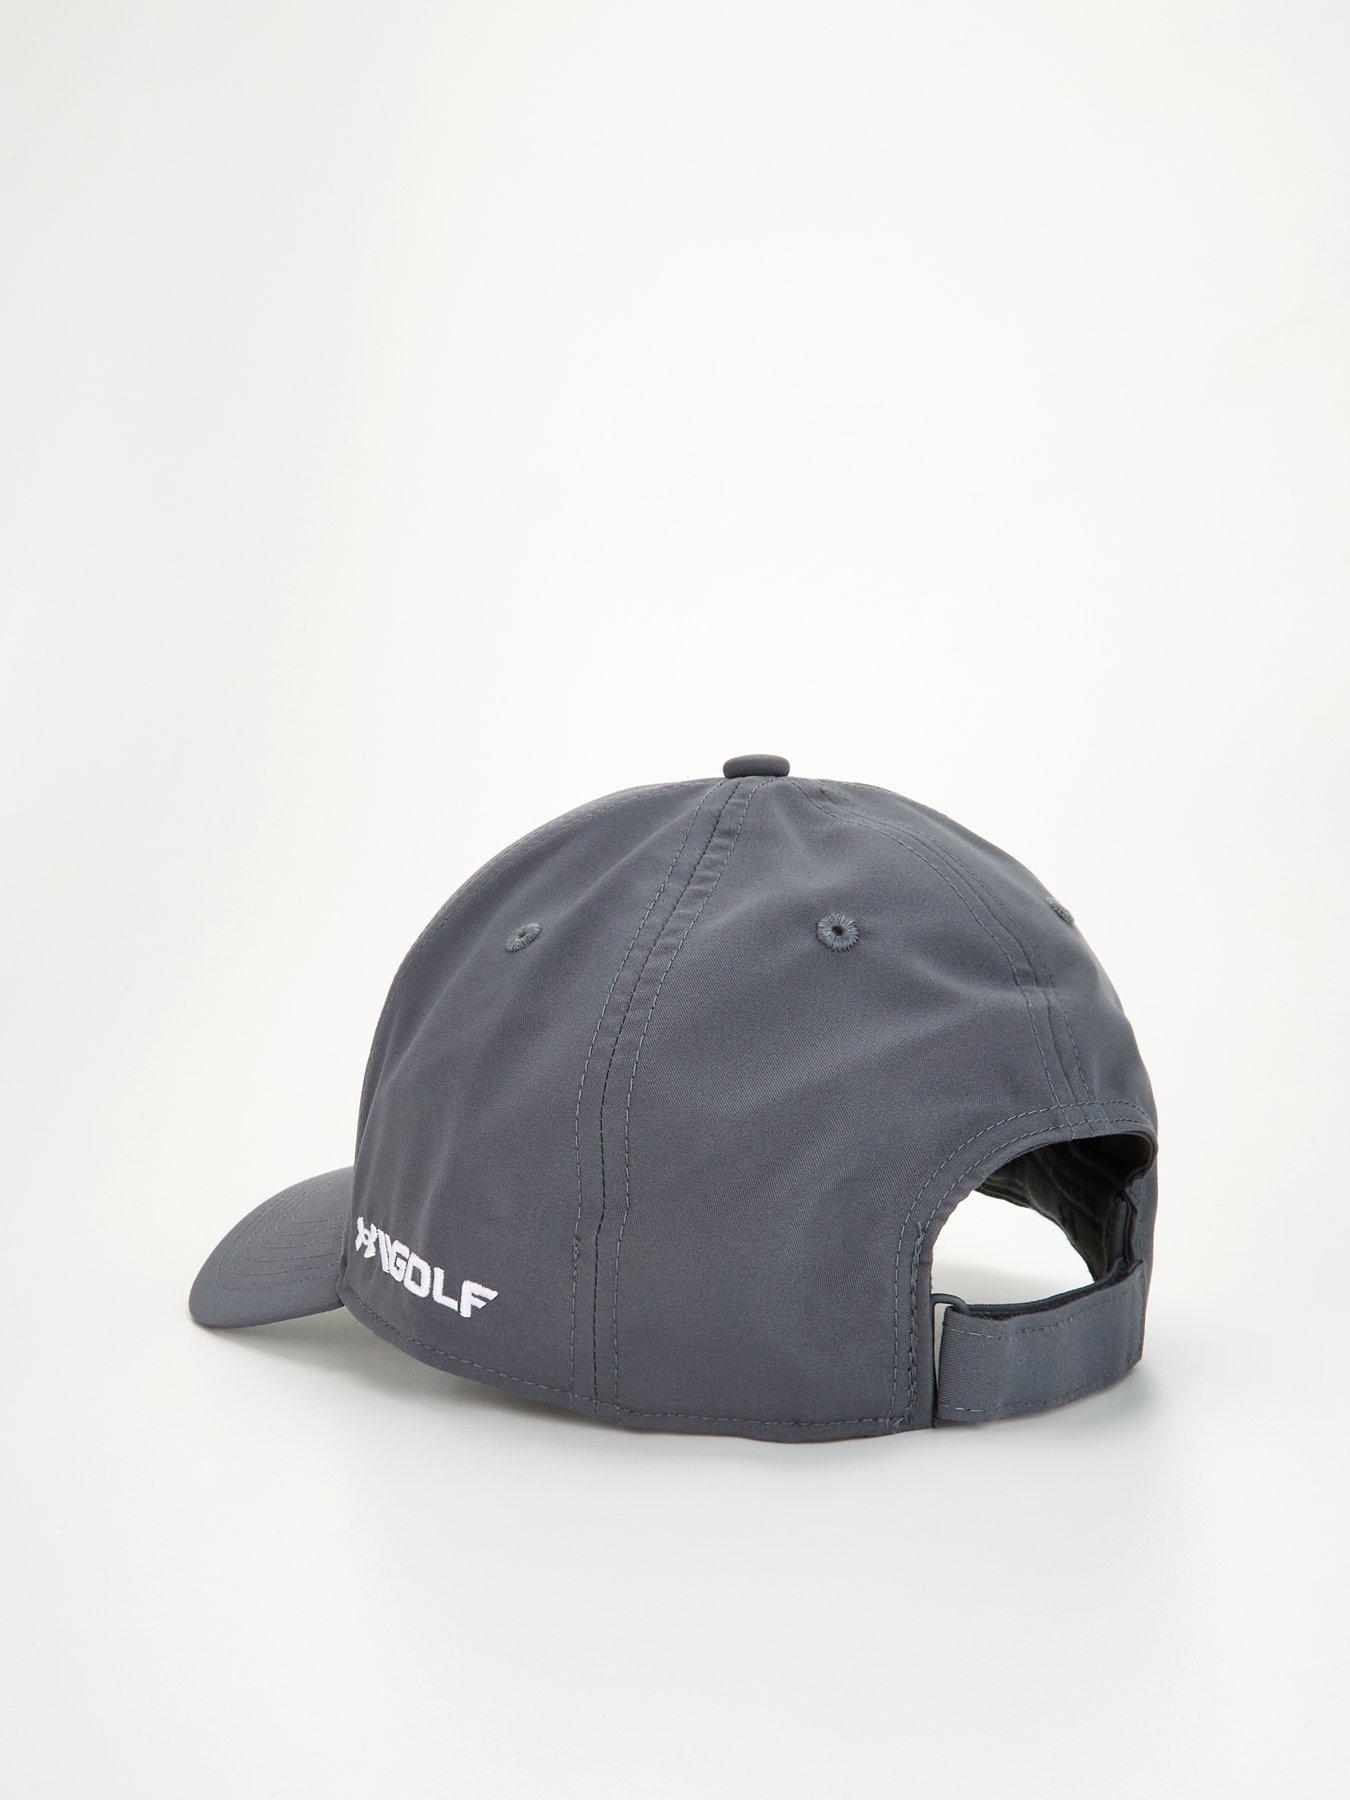 UNDER ARMOUR Golf 96 Hat - Grey